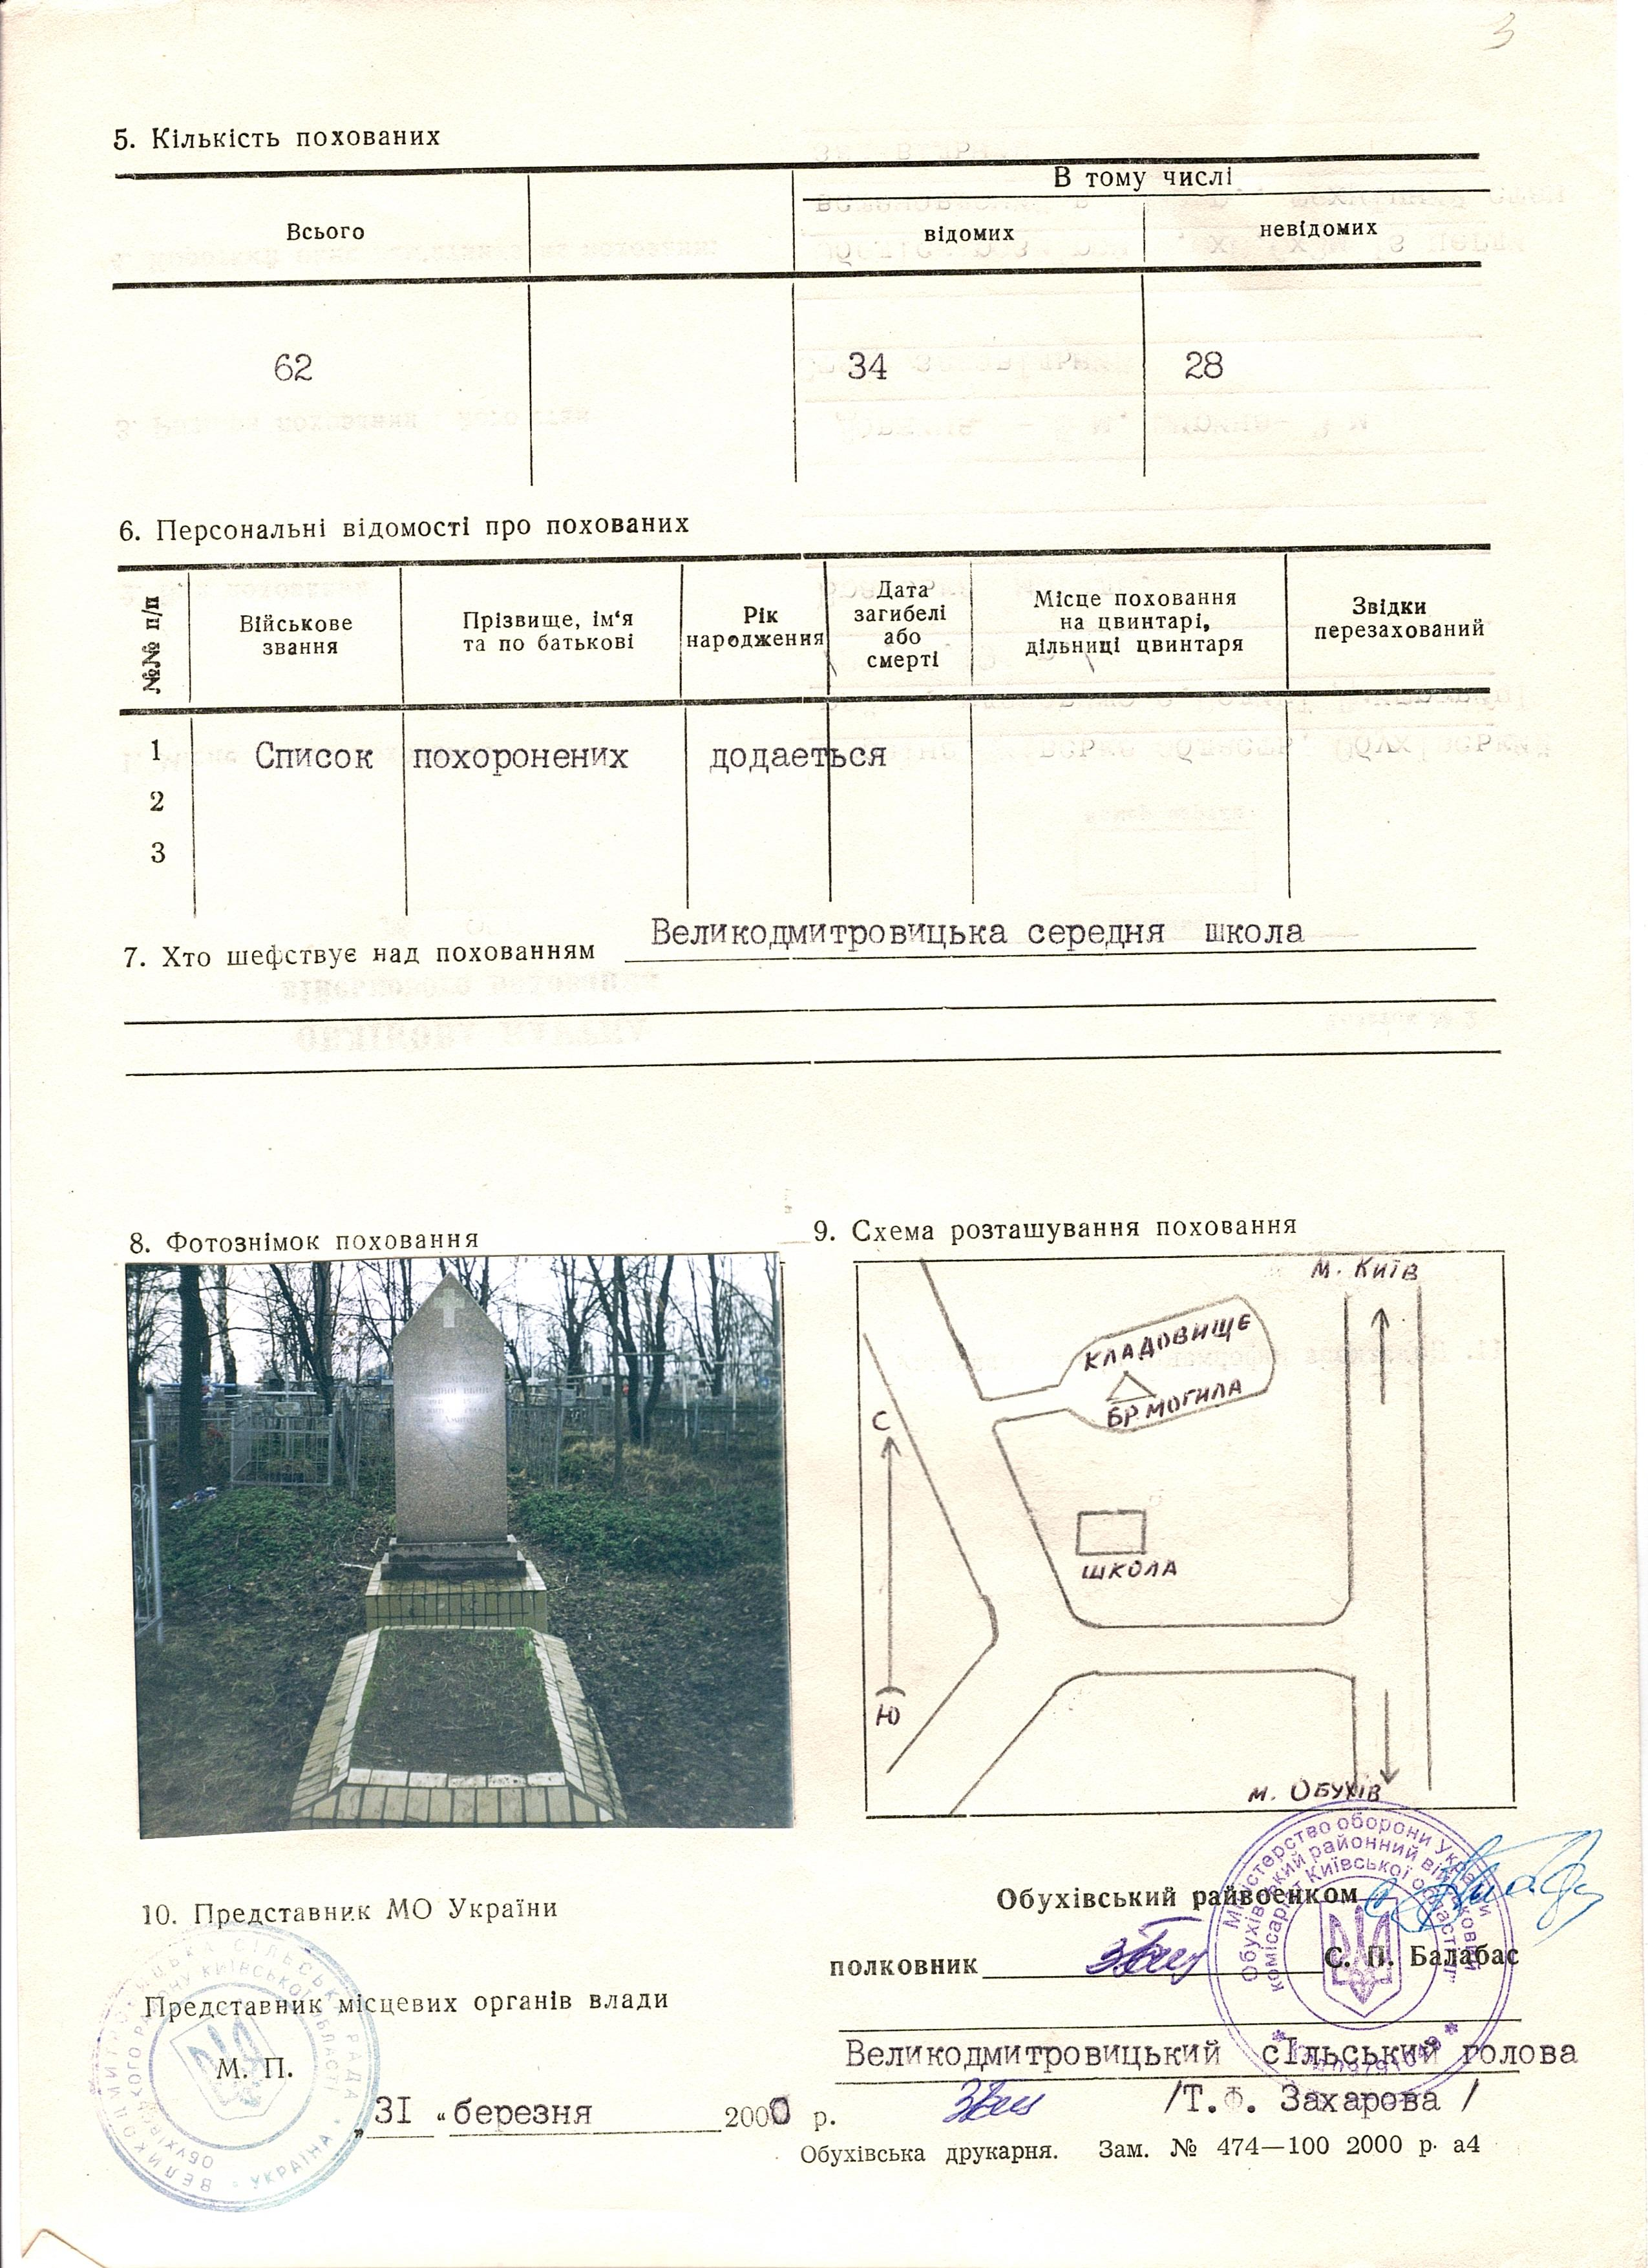 Братская могила на кладбище с. Великие Дмитровичи Обуховского района 